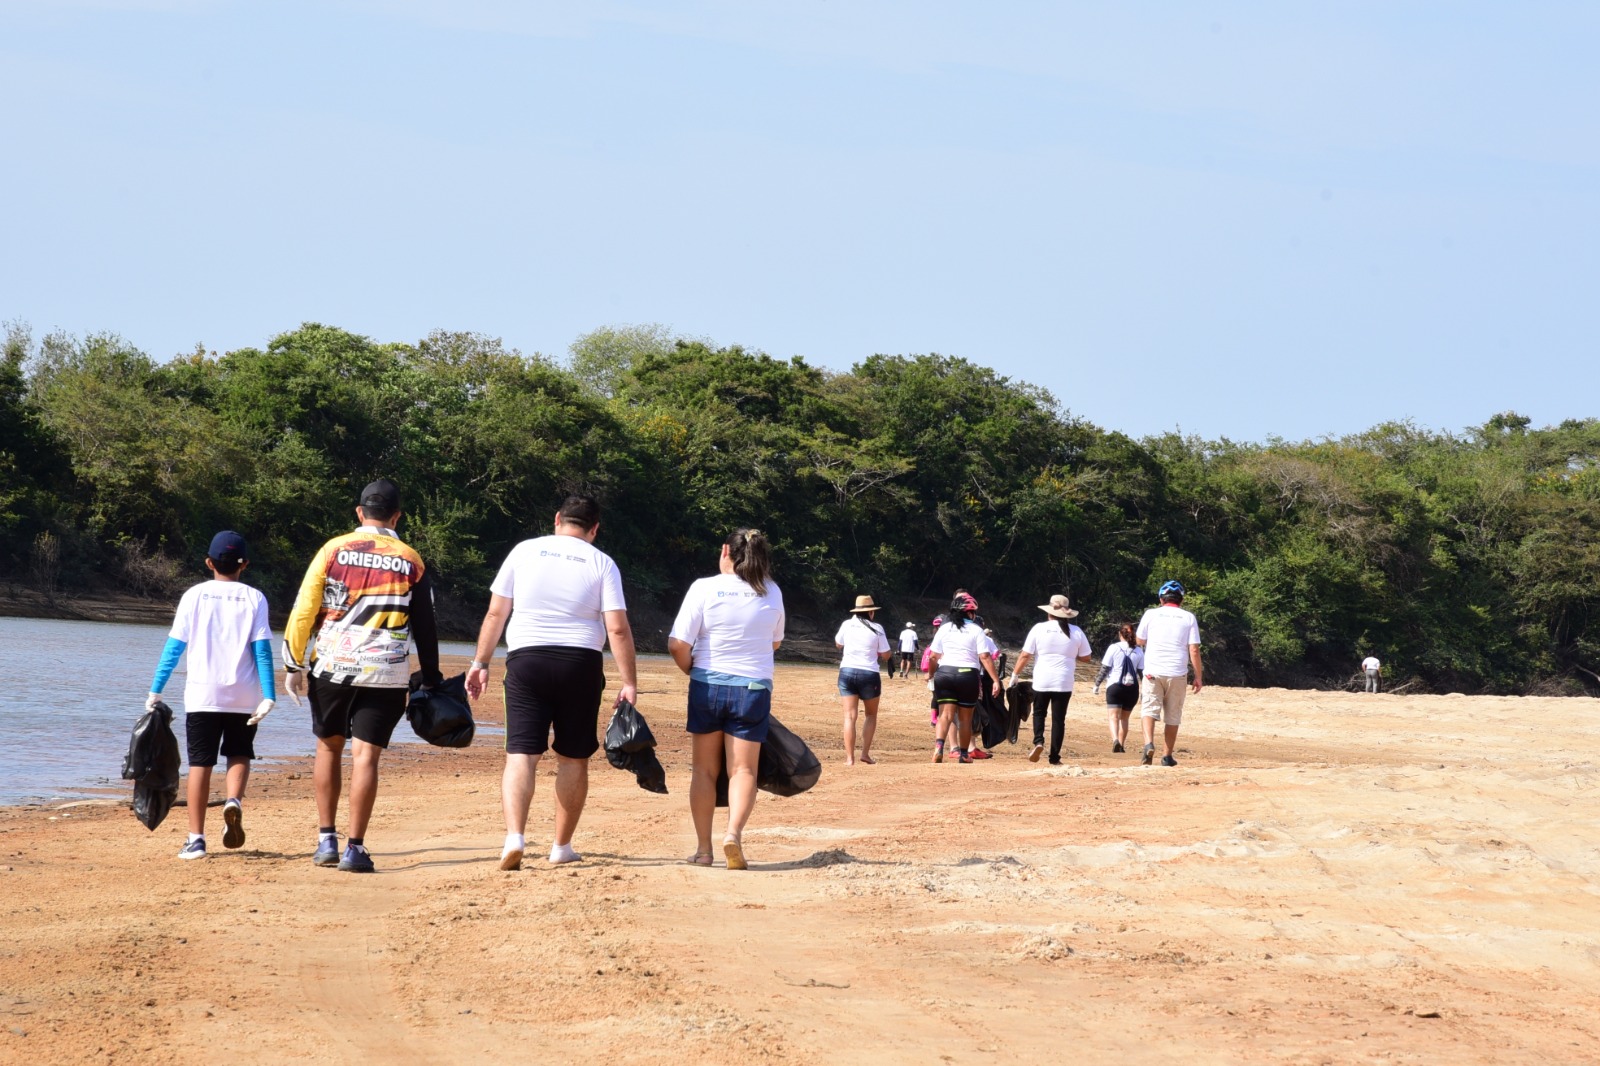 Imagem colorida mostra um grupo de pessoas de costas, vestindo camisas brancas e segurando um saco preto na mão, caminhando pela praia do Caçari.